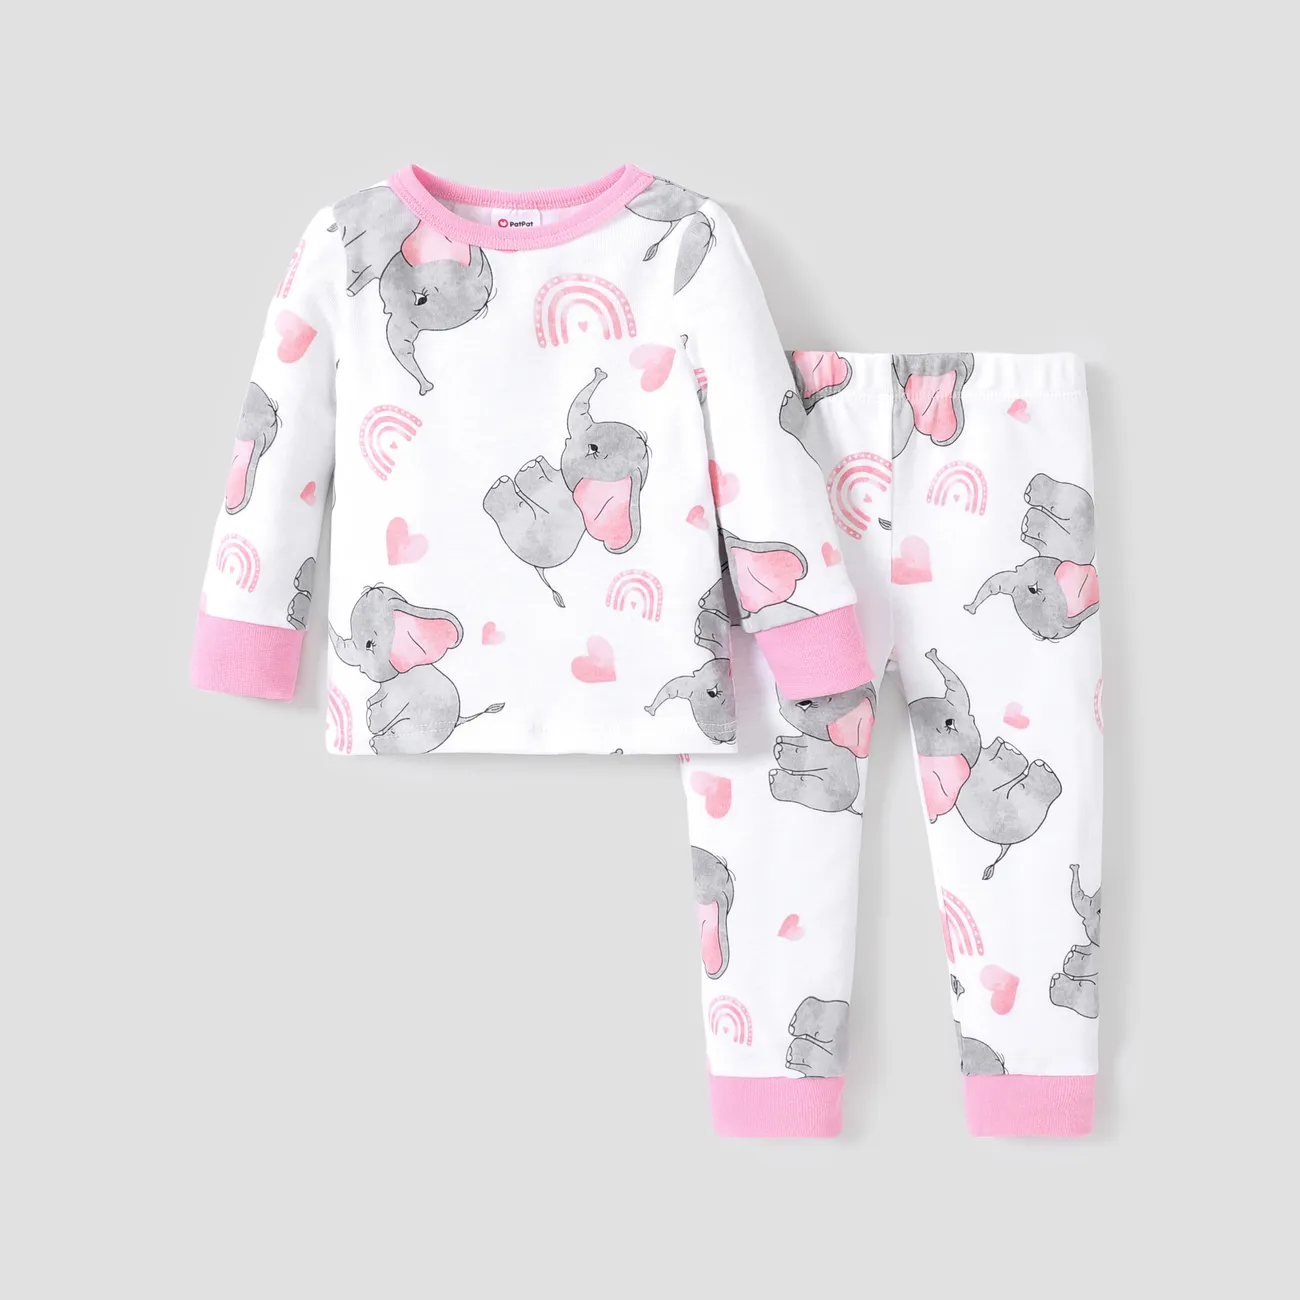 Conjunto de pijama unissex de algodão justo - estilo básico para crianças em 2 peças. Rosa big image 1